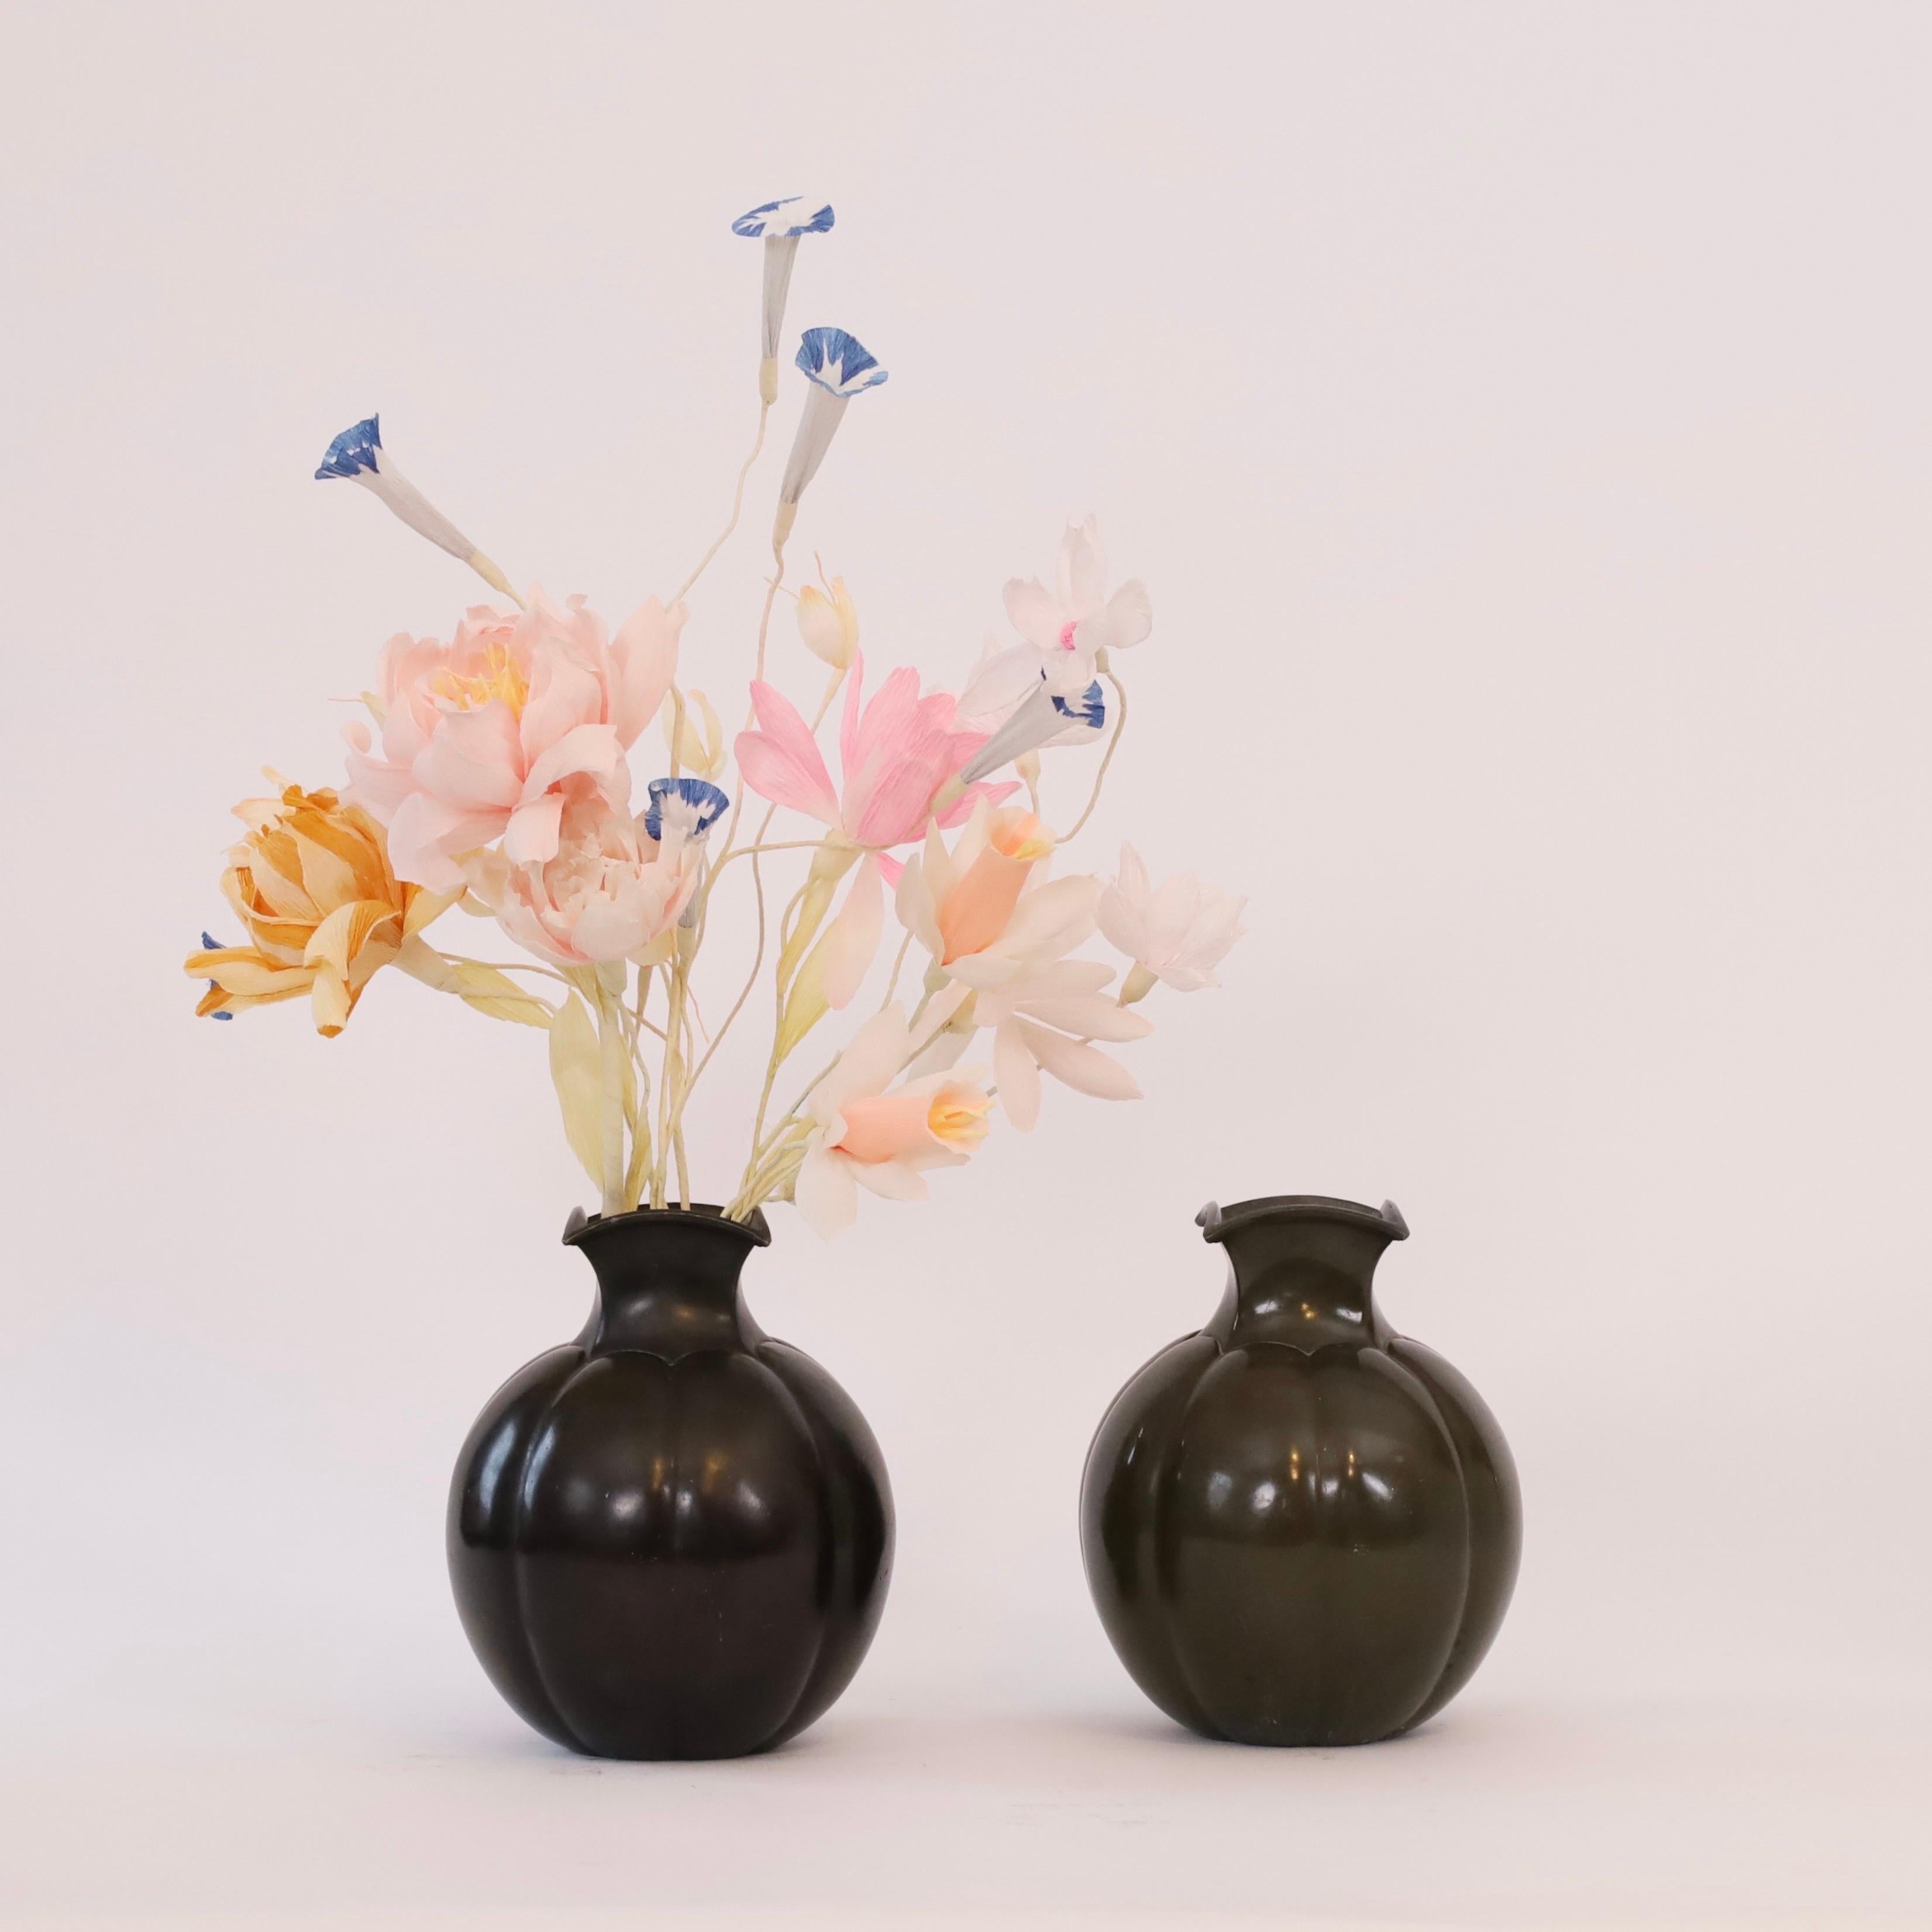 Un ensemble de vases en métal conçus par Just Andersen dans les années 1930. Un duo rare et exquis. 

* Un ensemble (2) de vases ronds en métal lourd avec des cols carrés
* Designer : Just Andersen
* Modèle : D1754 (estampillé 